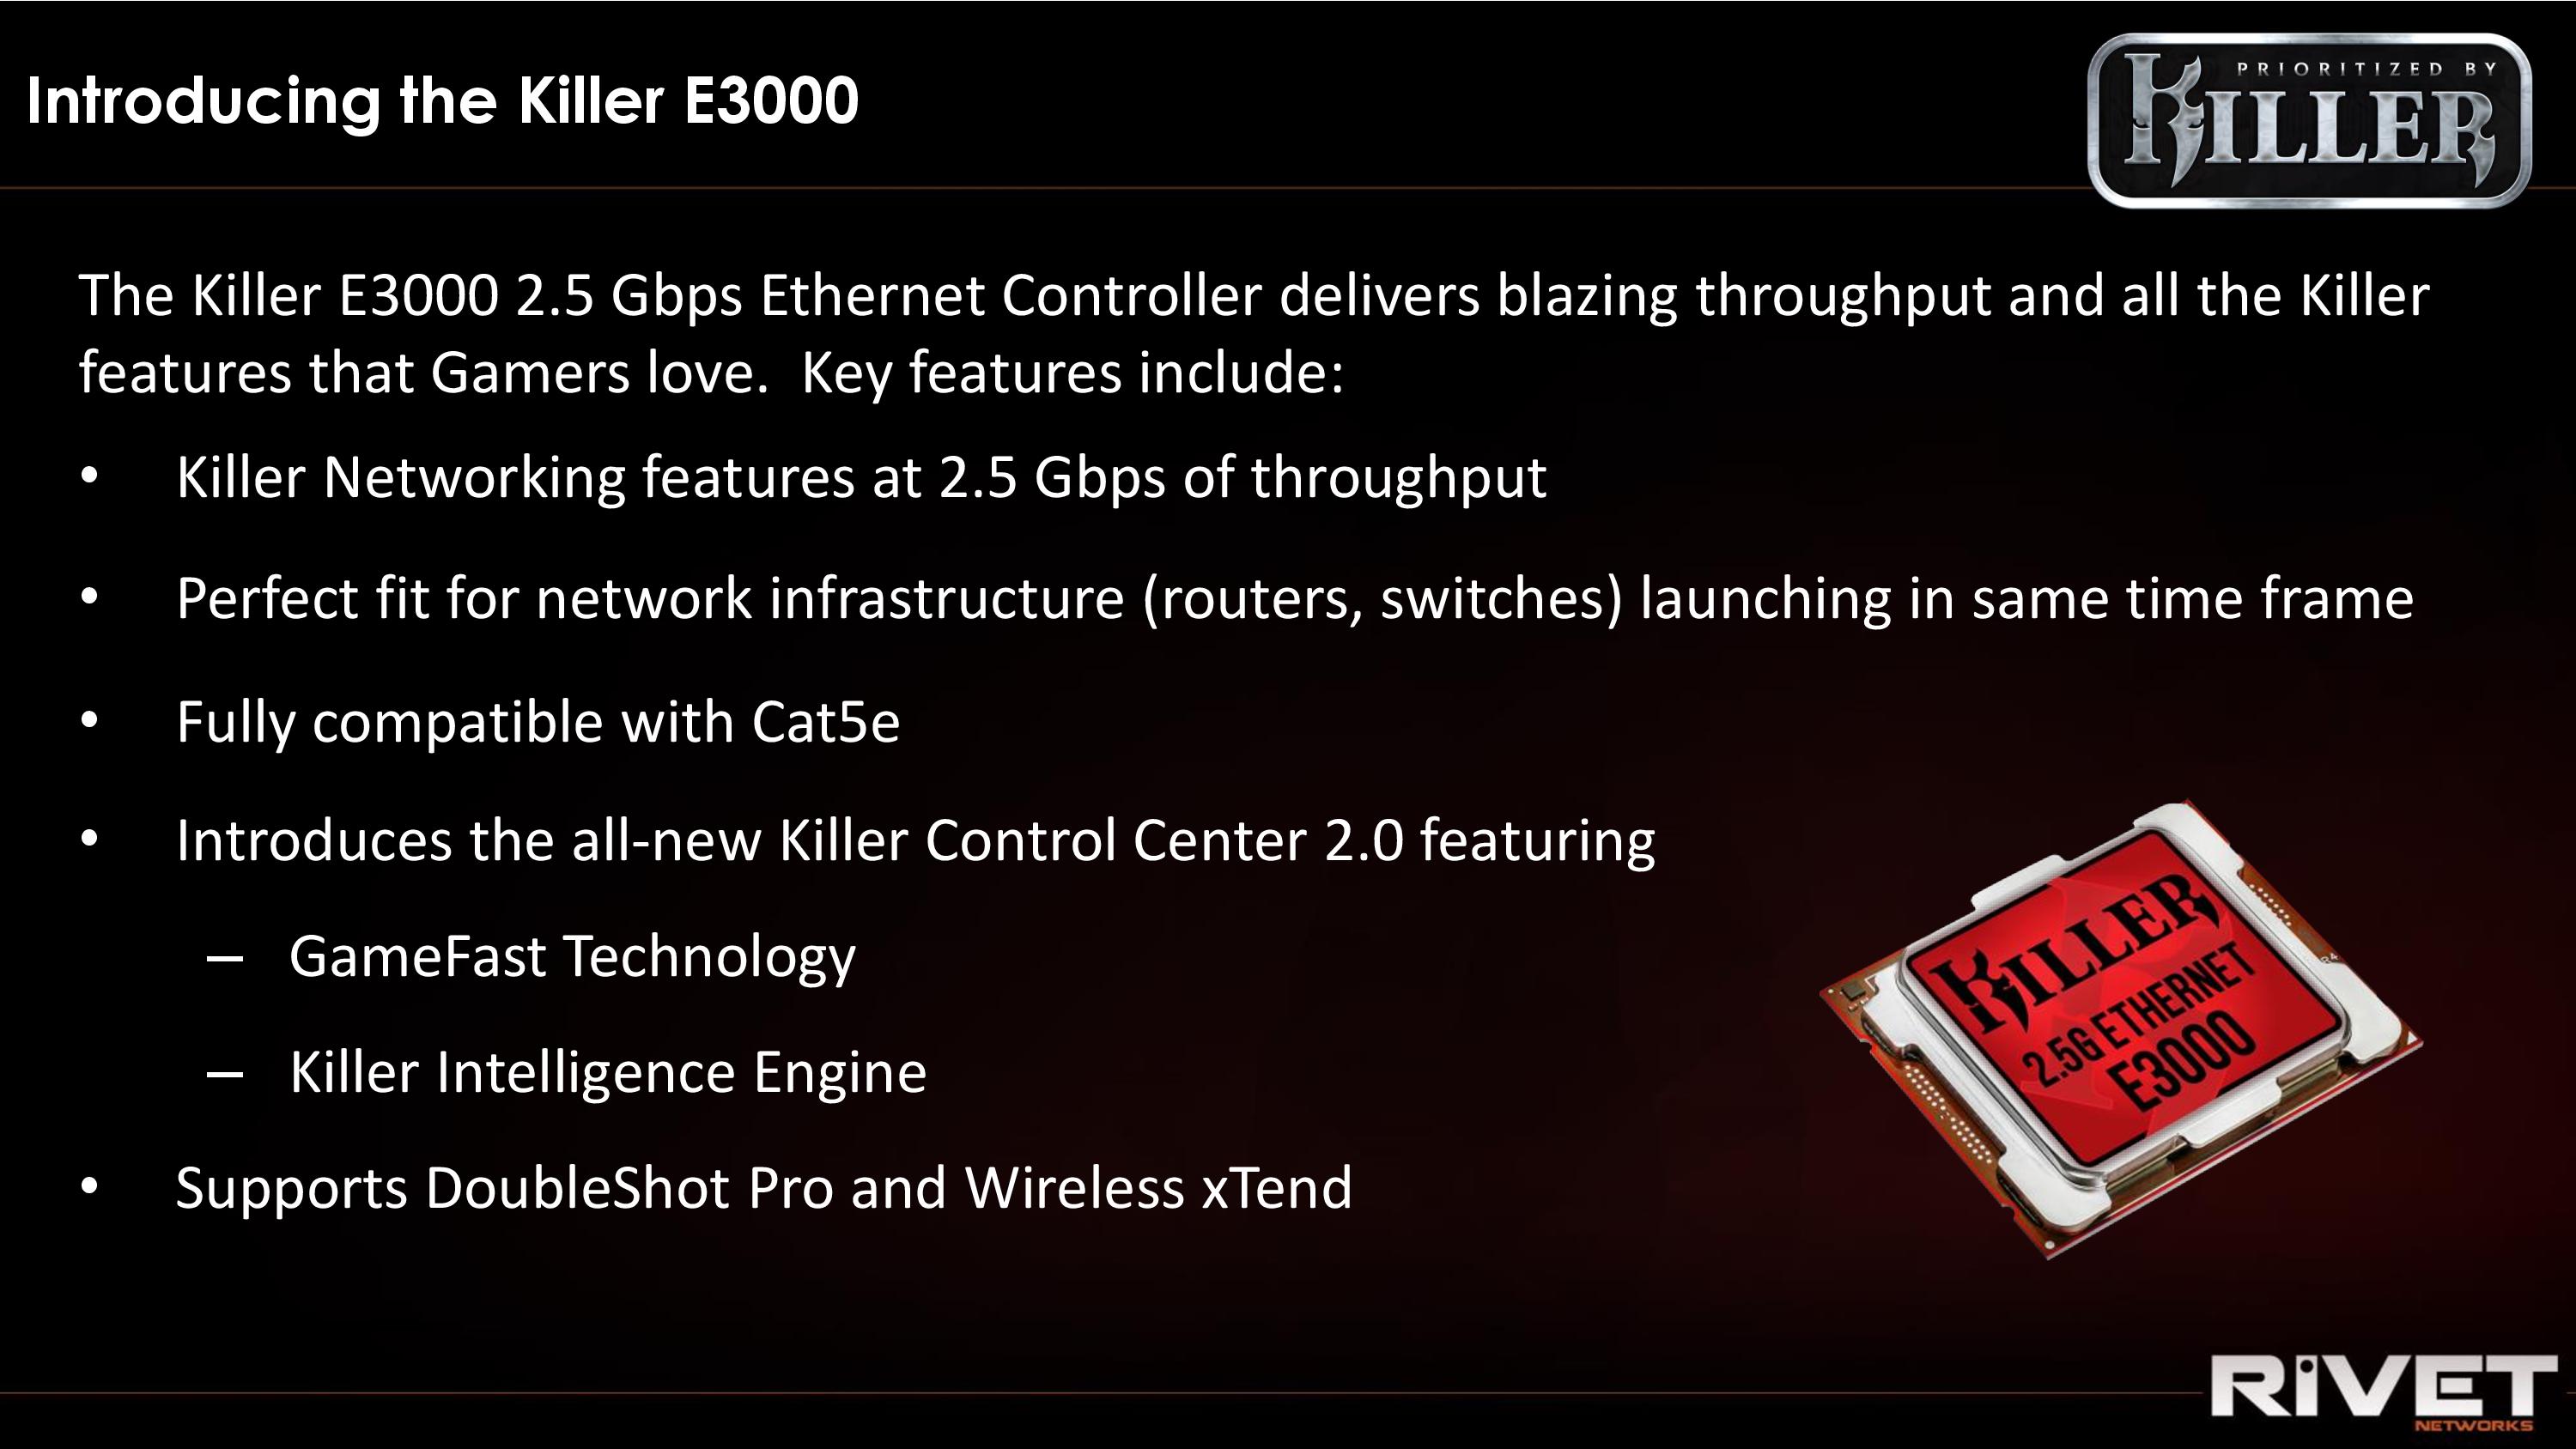 Killer e. Killer e 2400. Ethernet Killer. Killer e2400 Gigabit Ethernet Controller свойства. Контроллер Killer e2400 Gigabit Ethernet драйвер.